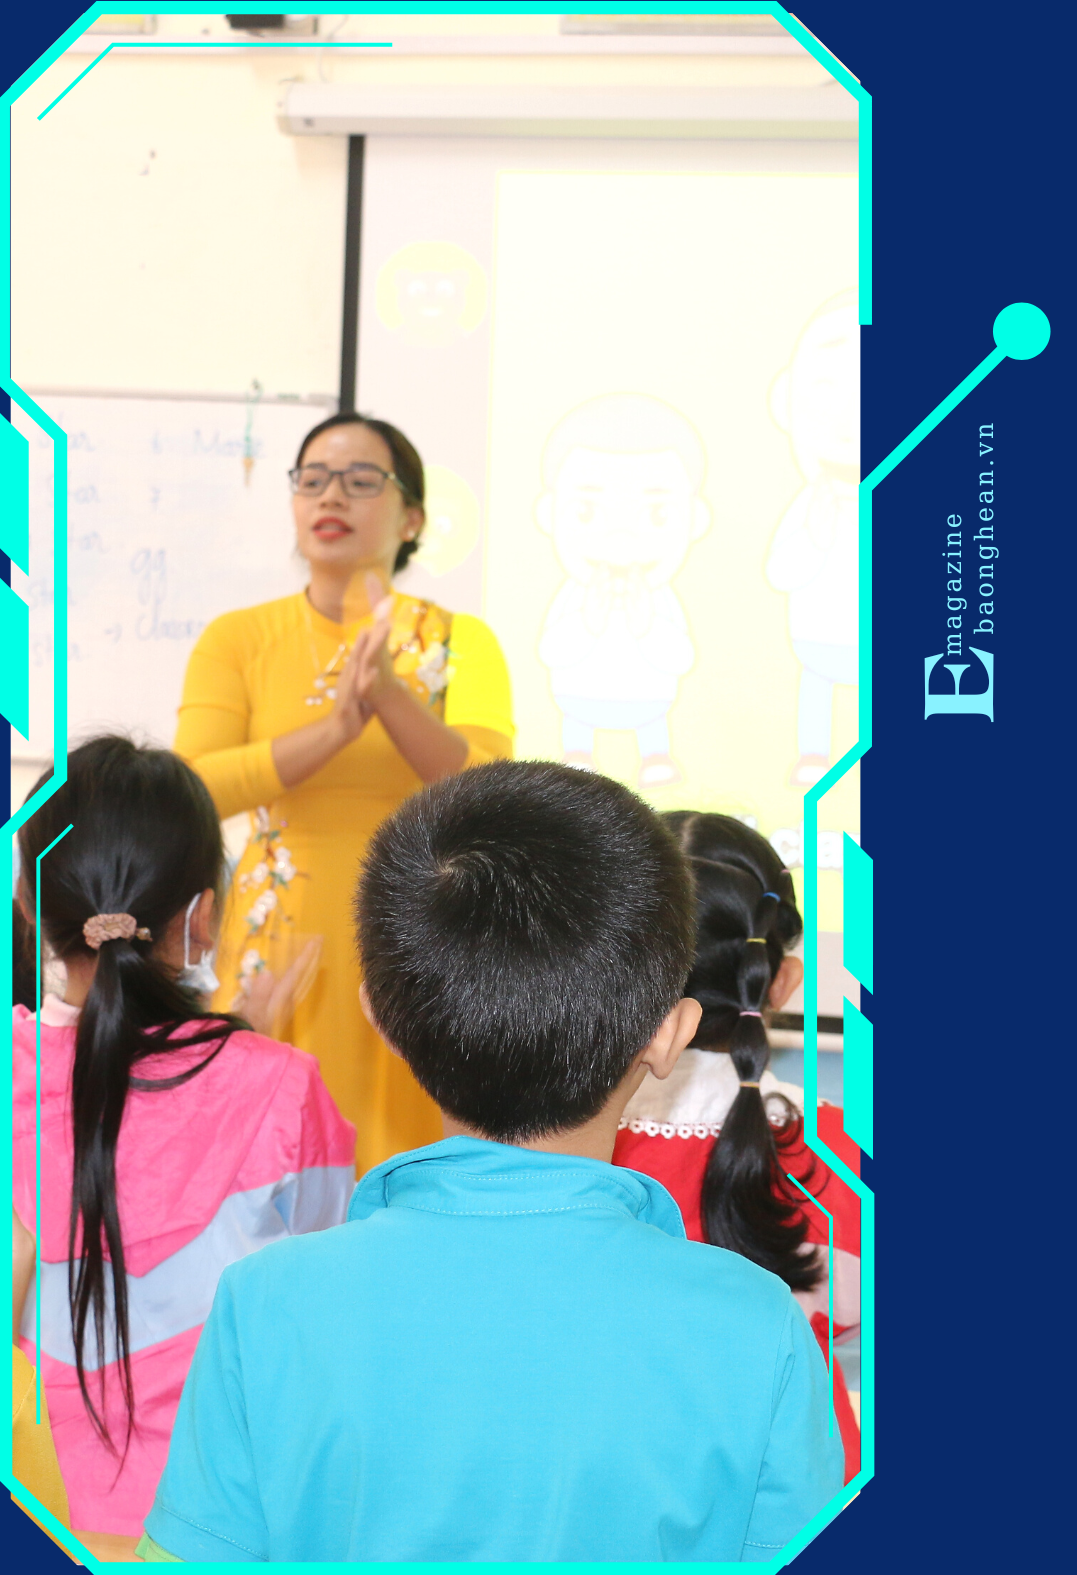 Những buổi học Tiếng Anh có sự tham gia của giáo viên Tiếng Việt và giáo viên nước ngoài luôn tạo hứng thú cho học sinh Trường Tiểu học thị trấn Mường Xén - huyện Kỳ Sơn